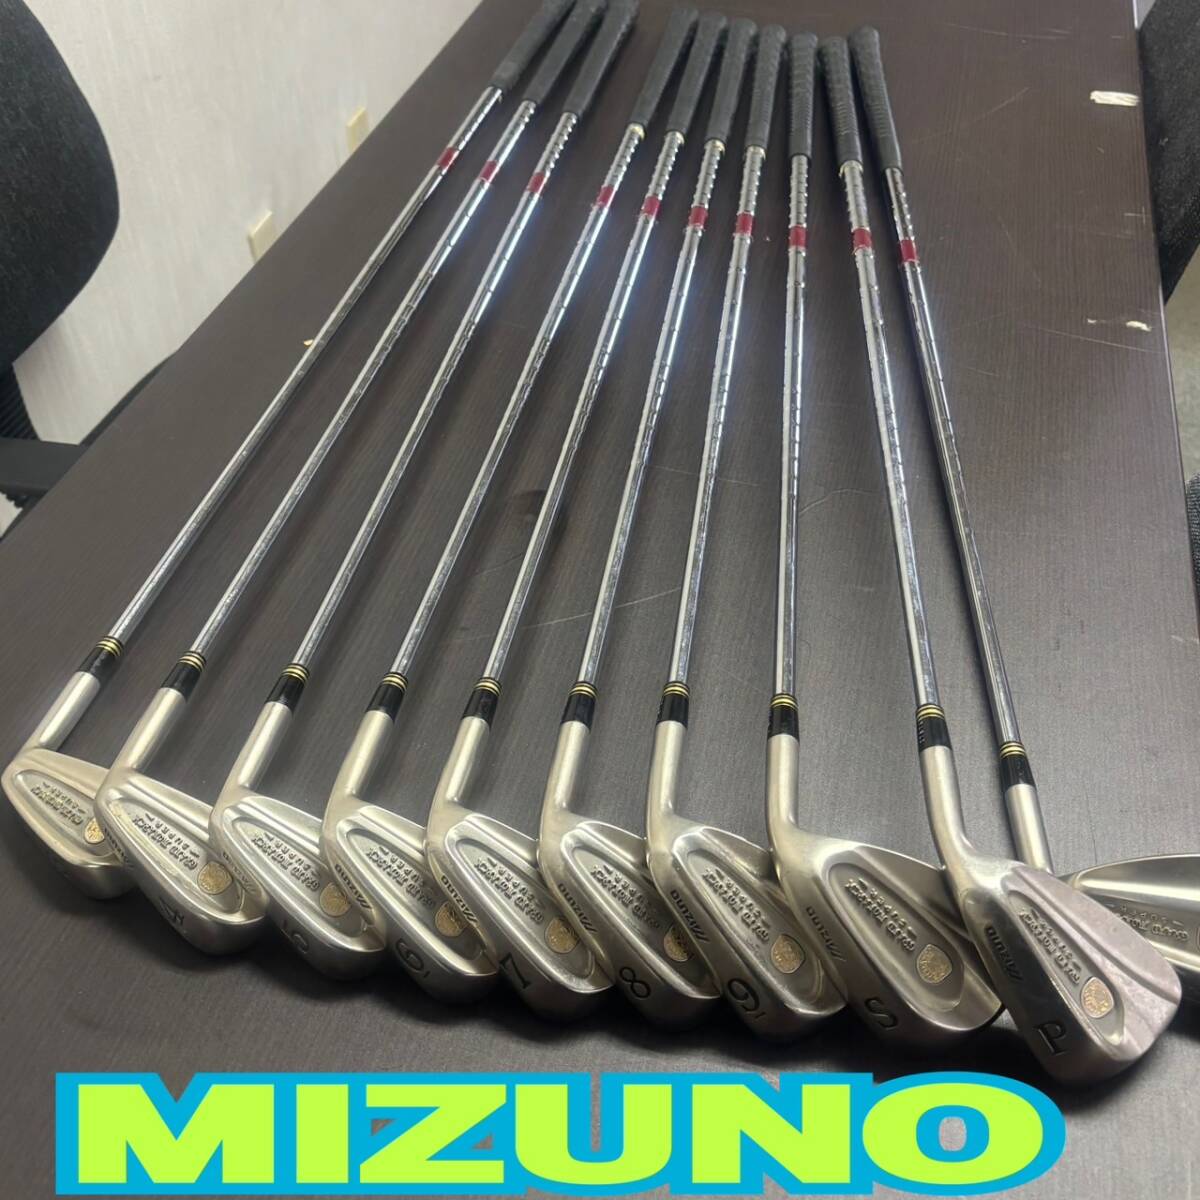 MIZUNO ◆ ゴルフクラブ 10点セット ◆ 3.4.5.6.7.8.9.S.F.P ◆ ミズノ ◆ SPORTS GOLF_画像1